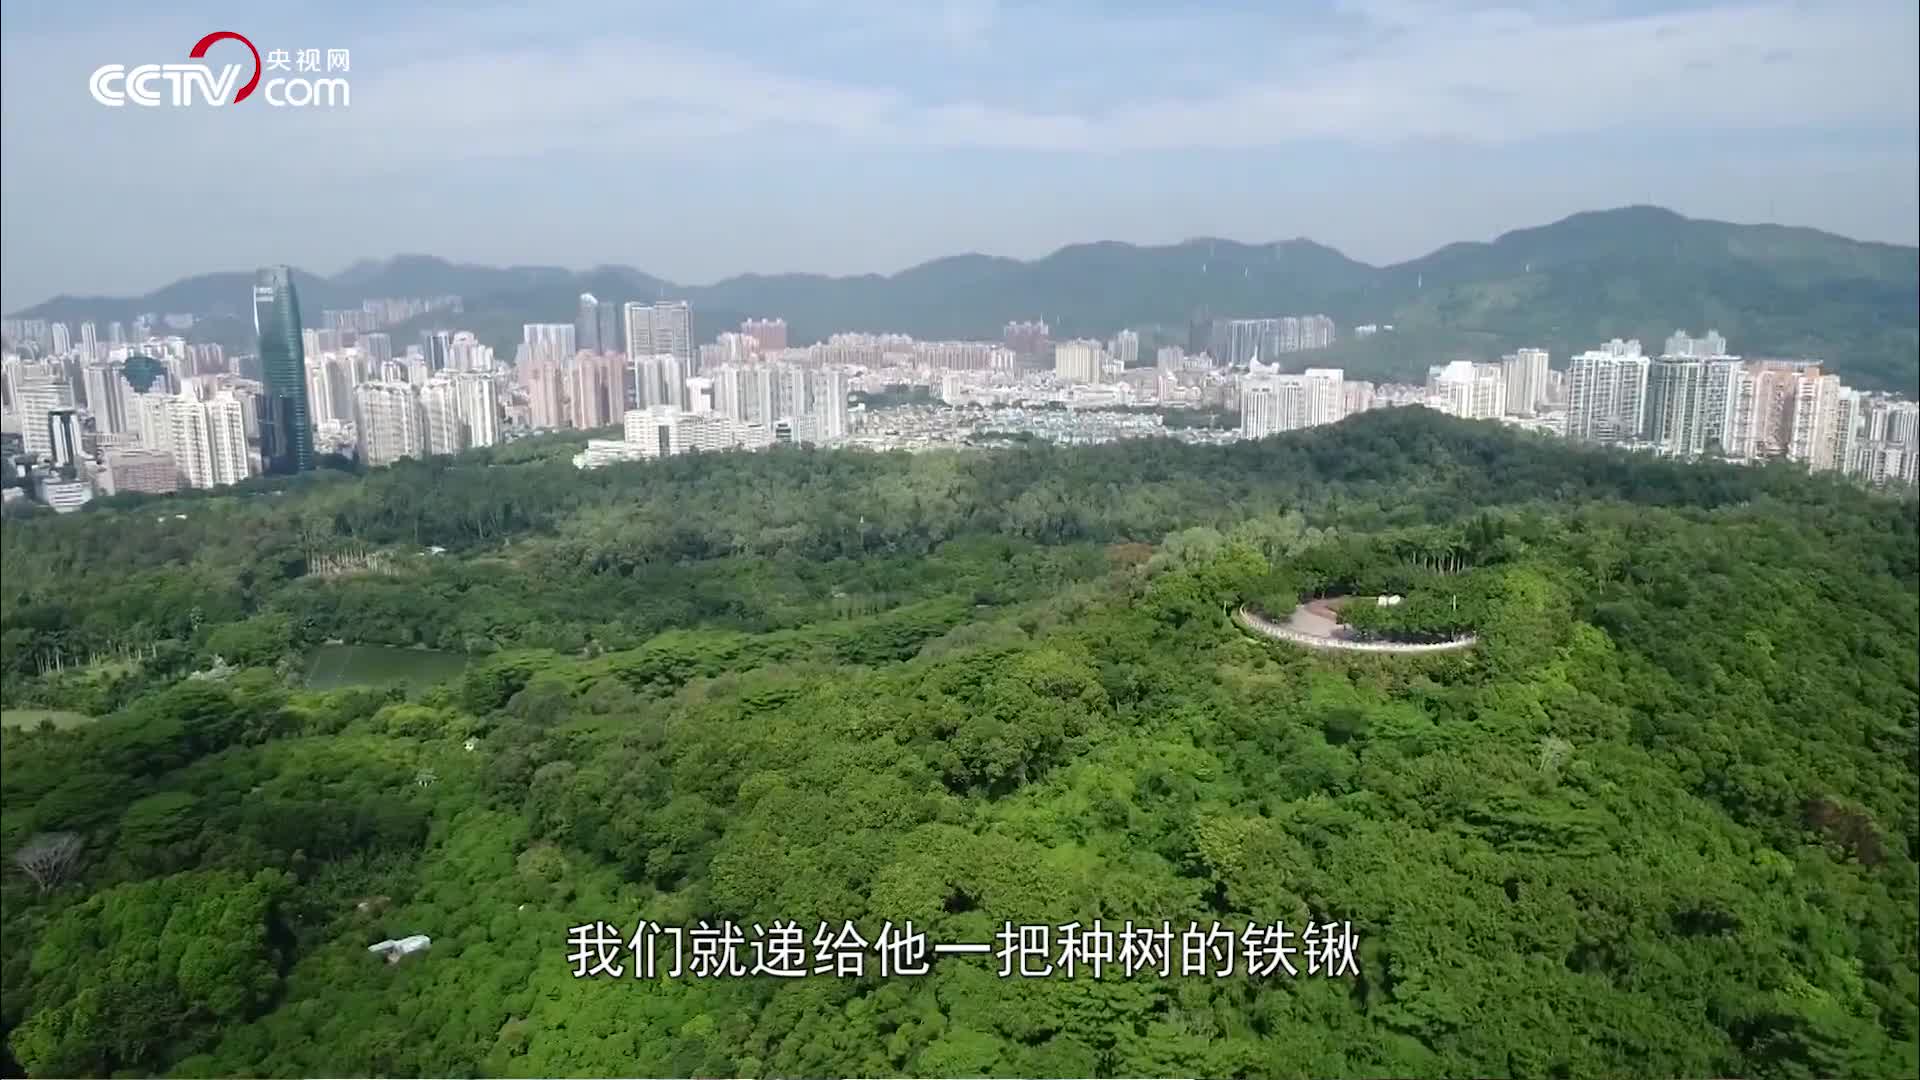 [视频]两棵高山榕 续写春天的故事